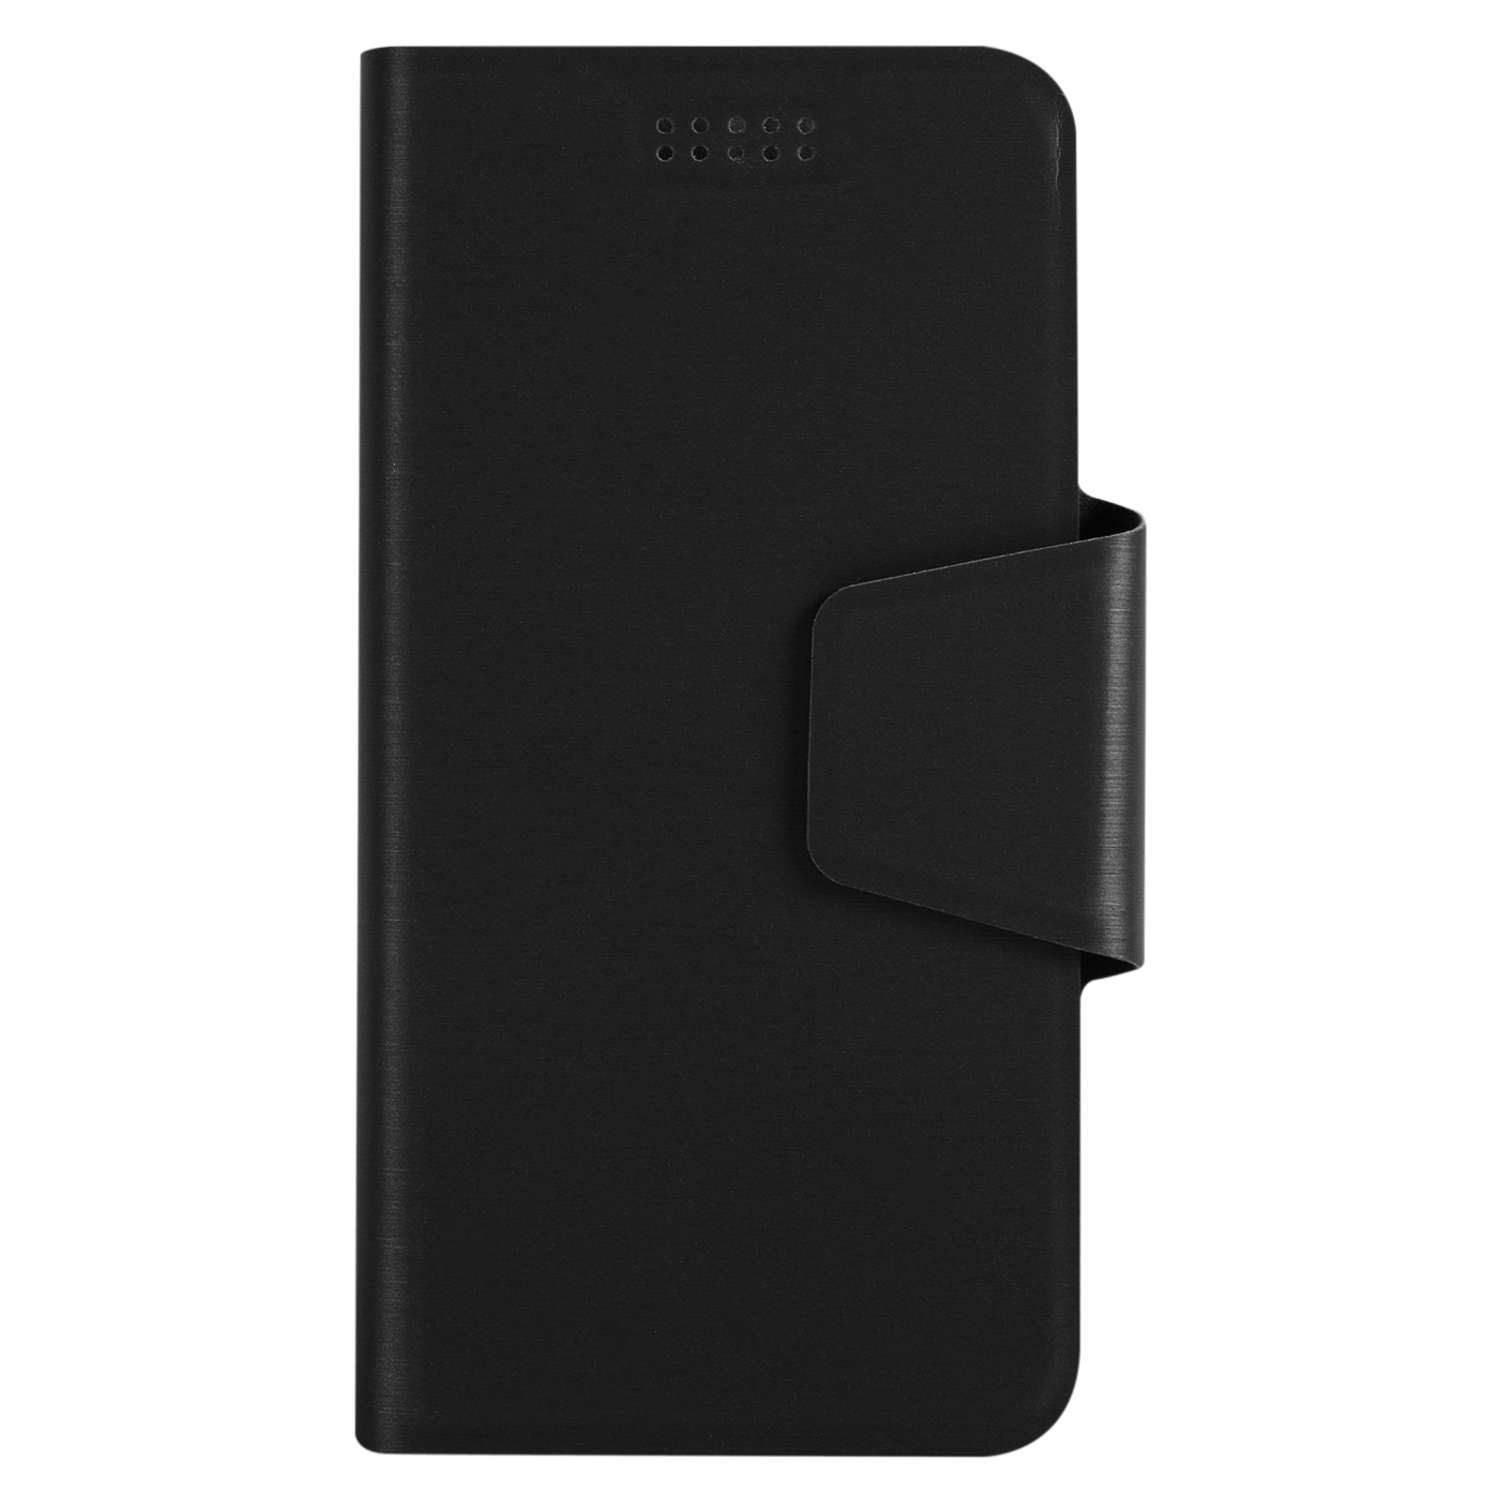 Чехол универсальный iBox UniMotion для телефонов 3.5-4.5 дюйма черный - фото 4